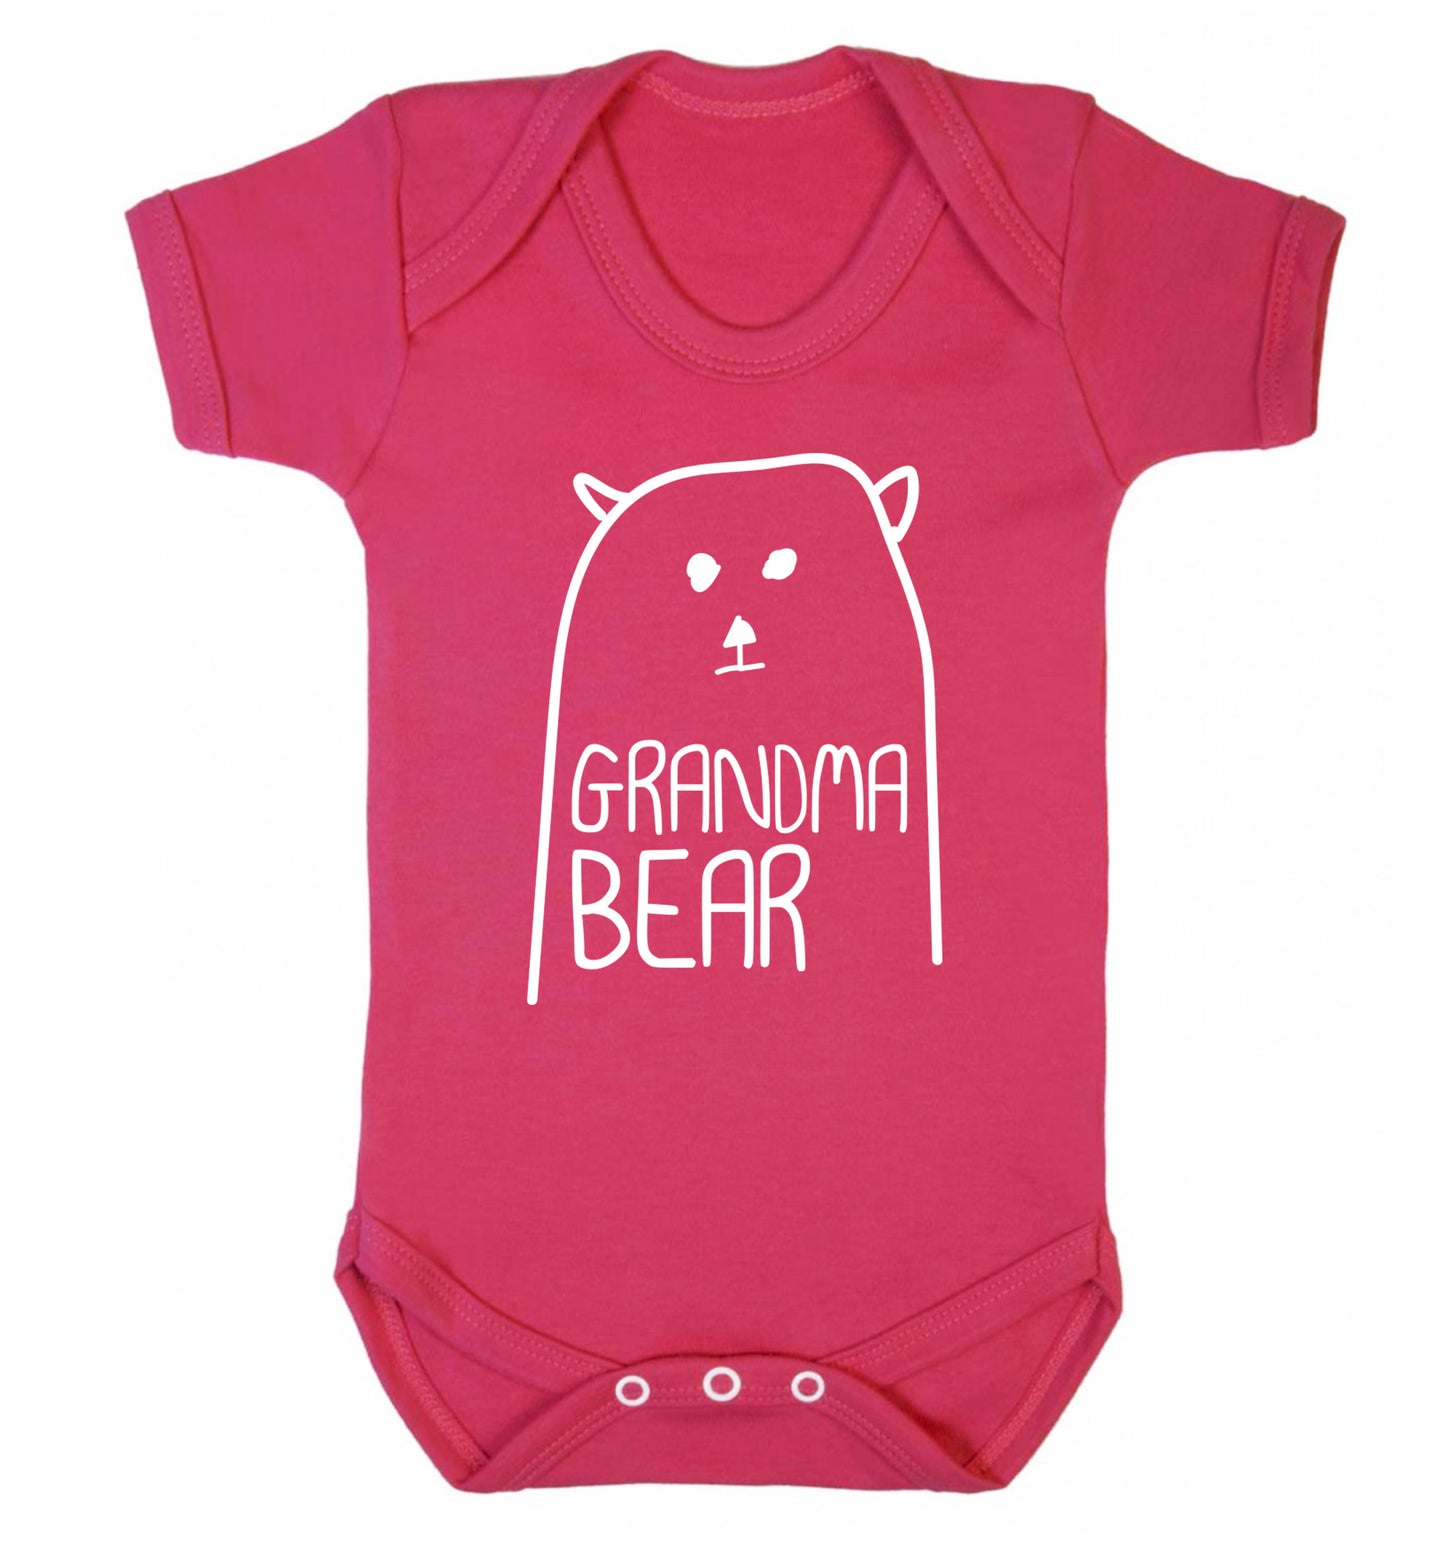 Grandma bear Baby Vest dark pink 18-24 months